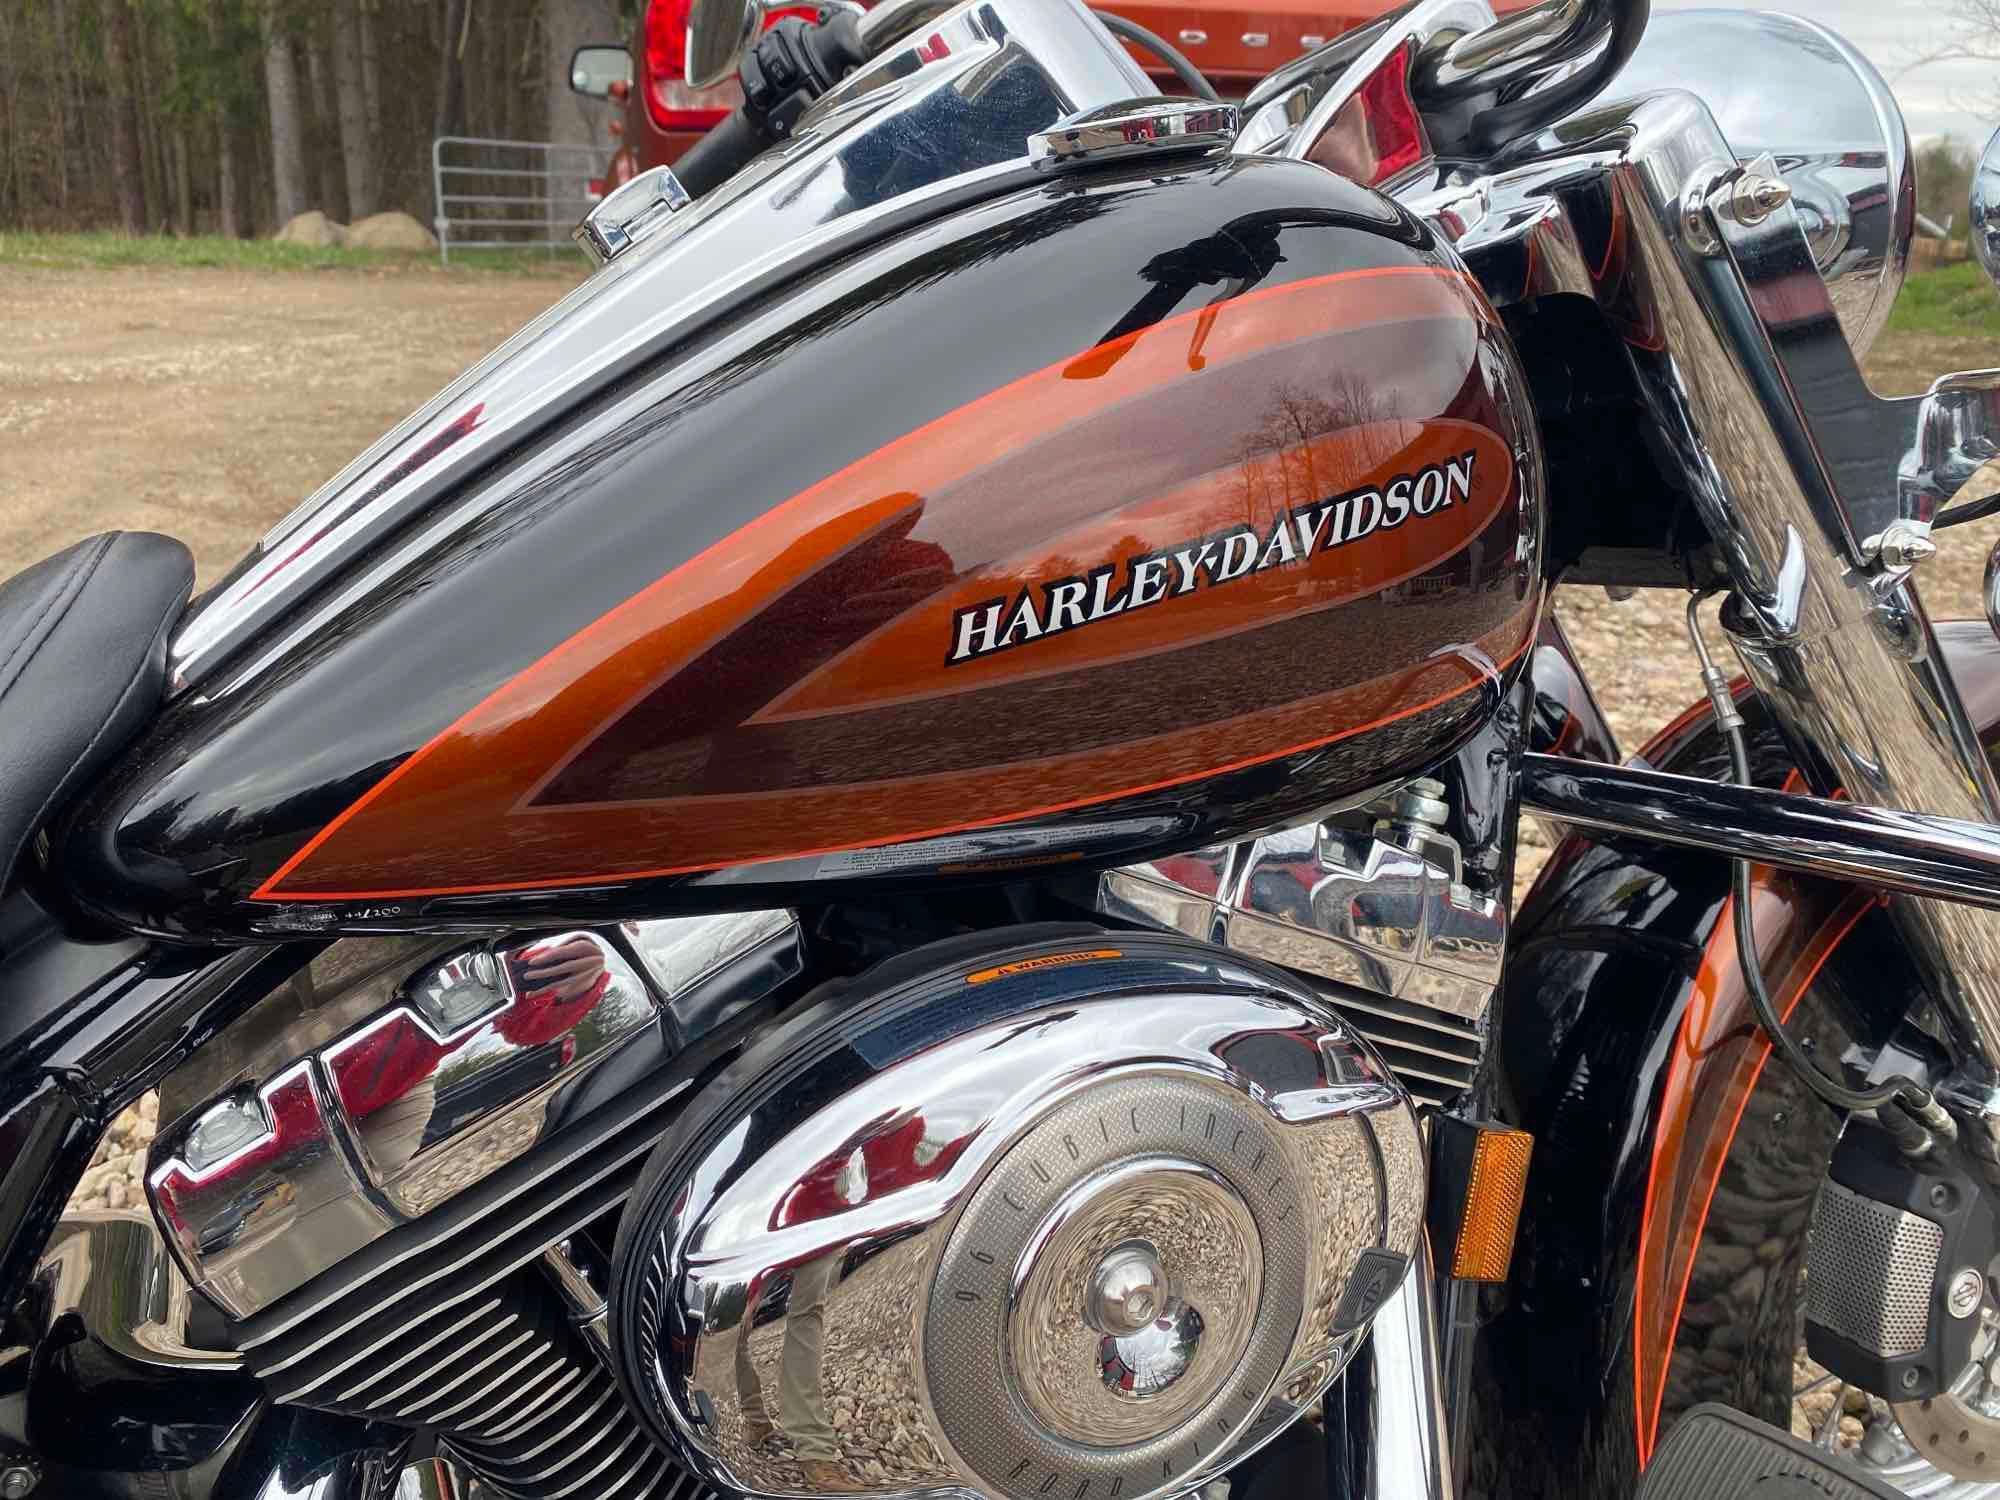 2008 Harley Davidson Road King - one owner